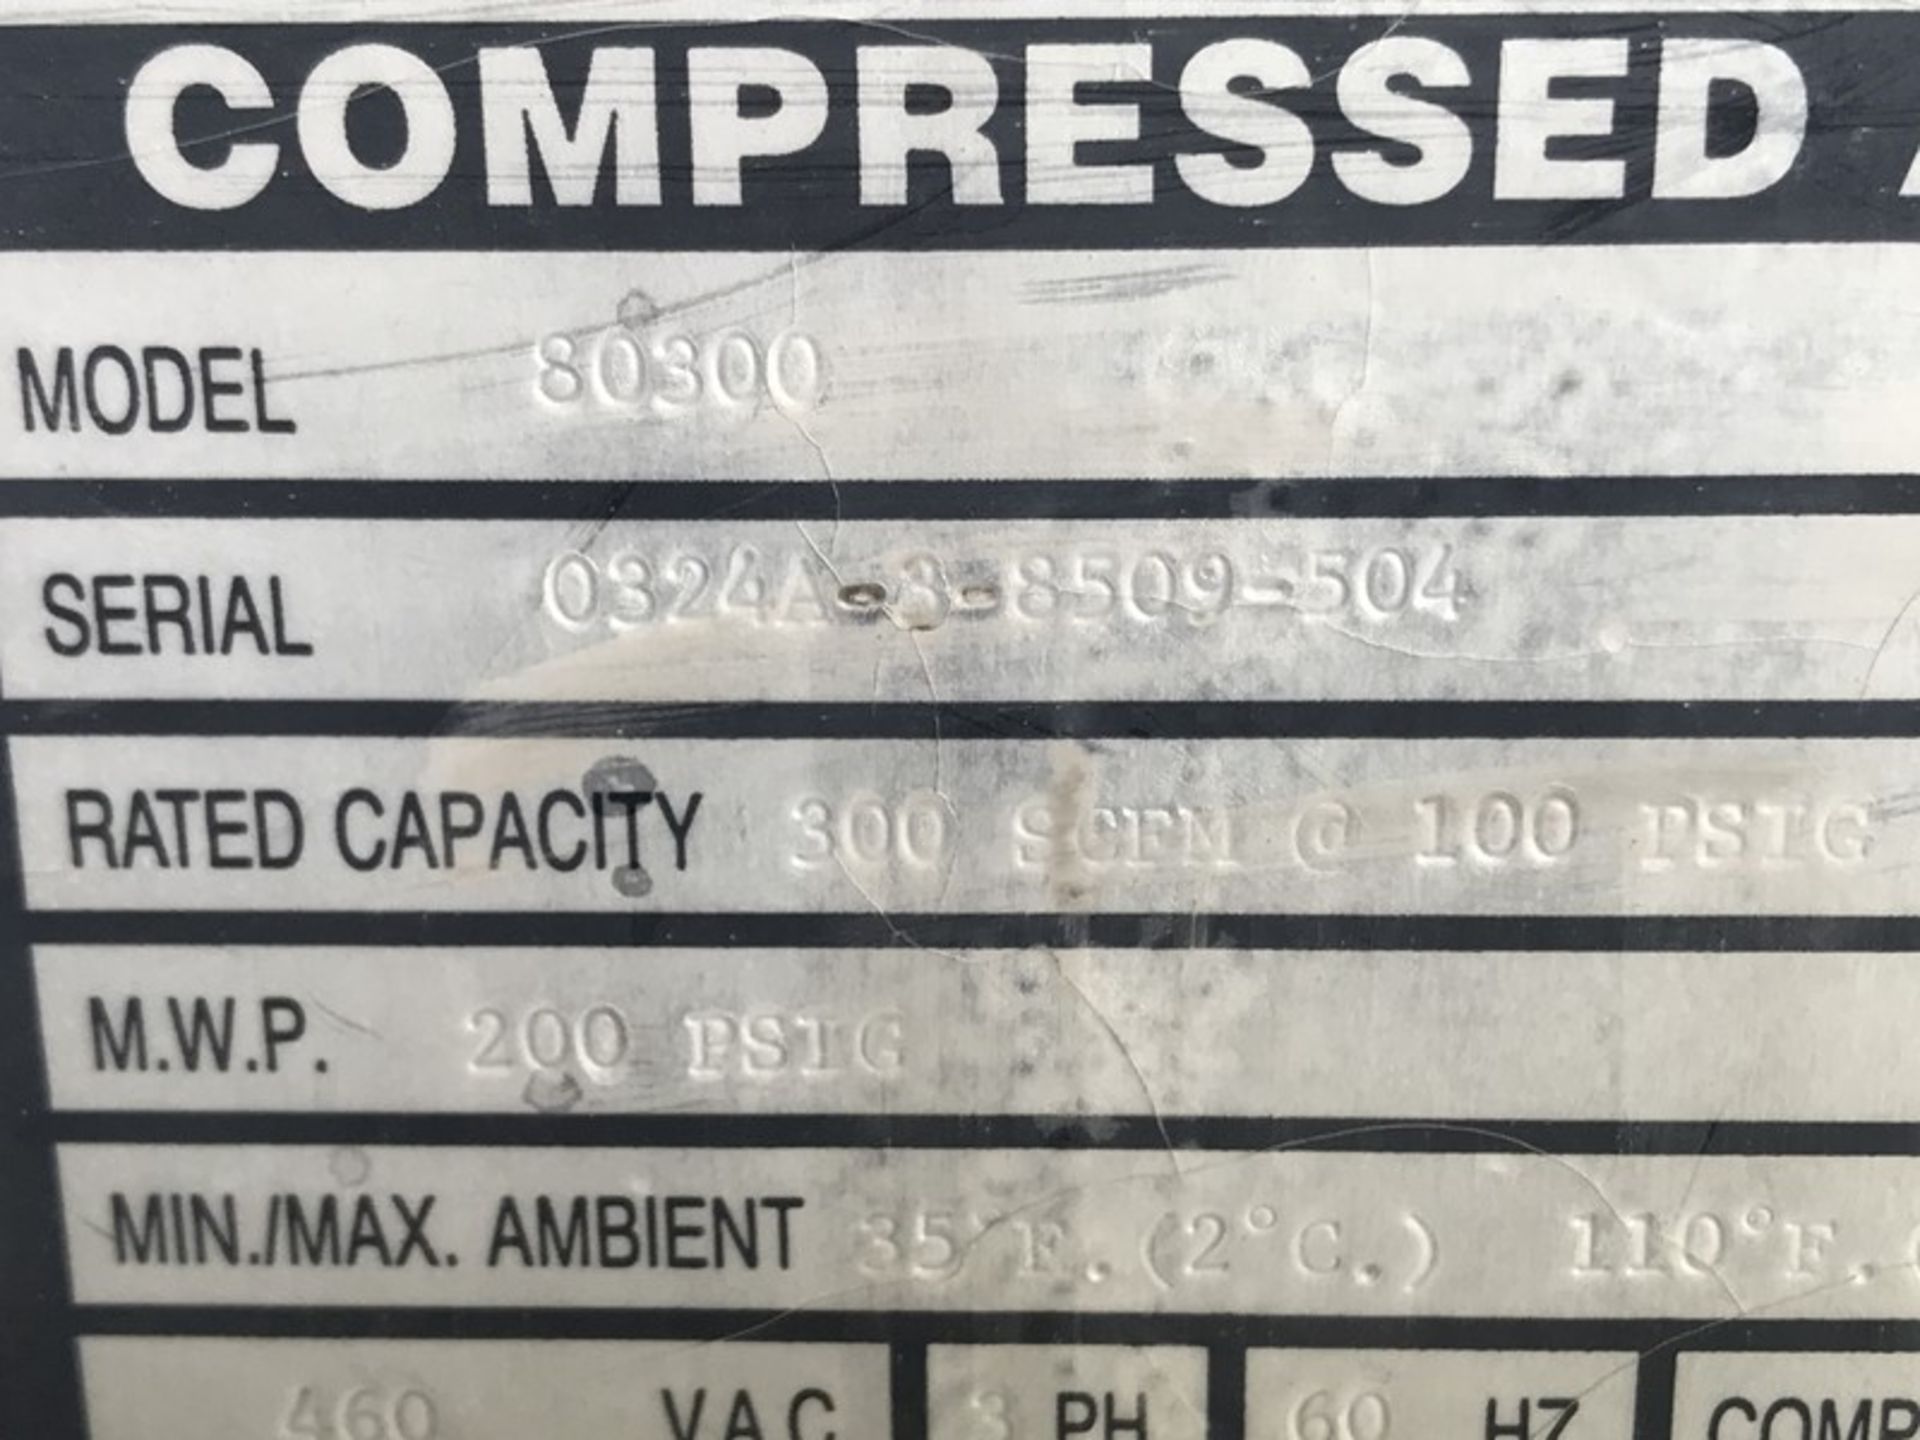 300 SCFM Hankinson Compressed Air Dryer. - Image 3 of 11